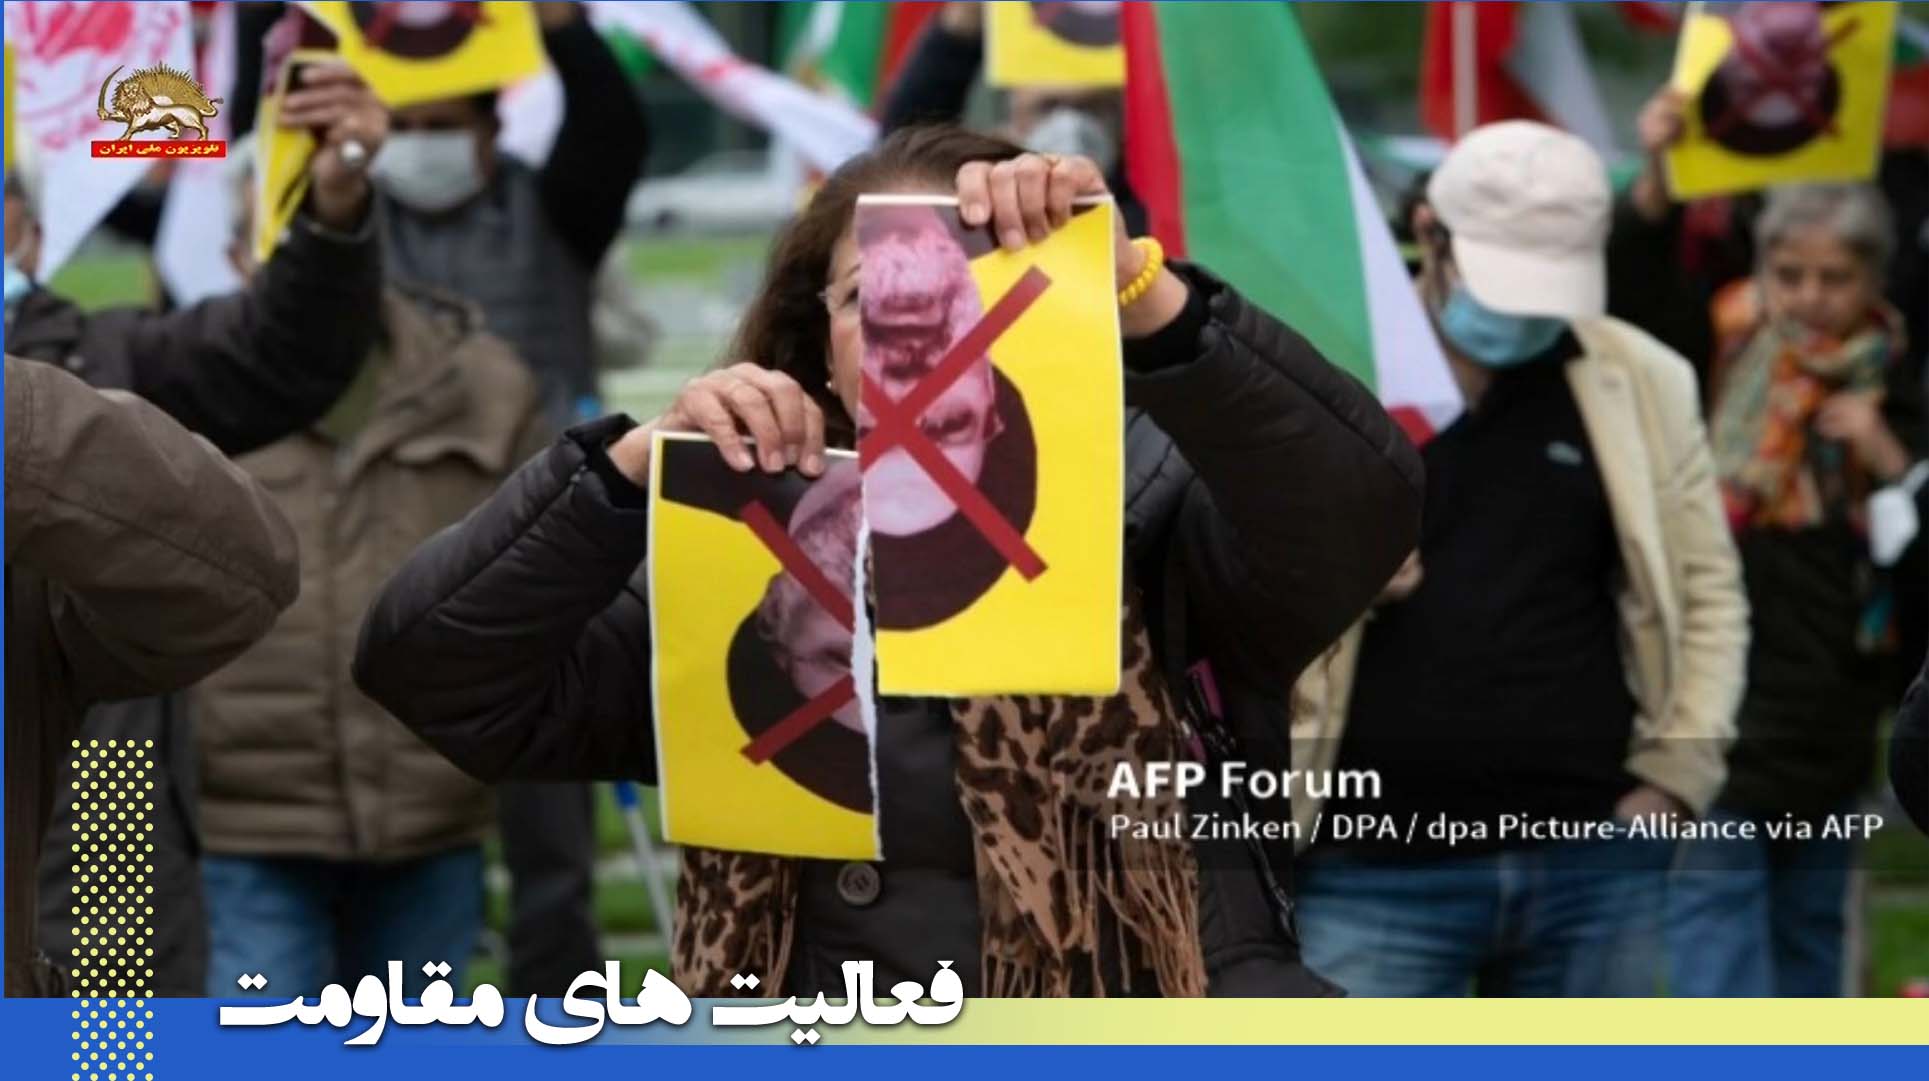 خبرگزاری فرانسه ـ تظاهرات جهانی هواداران مجاهدین علیه رئیسی در روز سخنرانی او برای مجمع عمومی